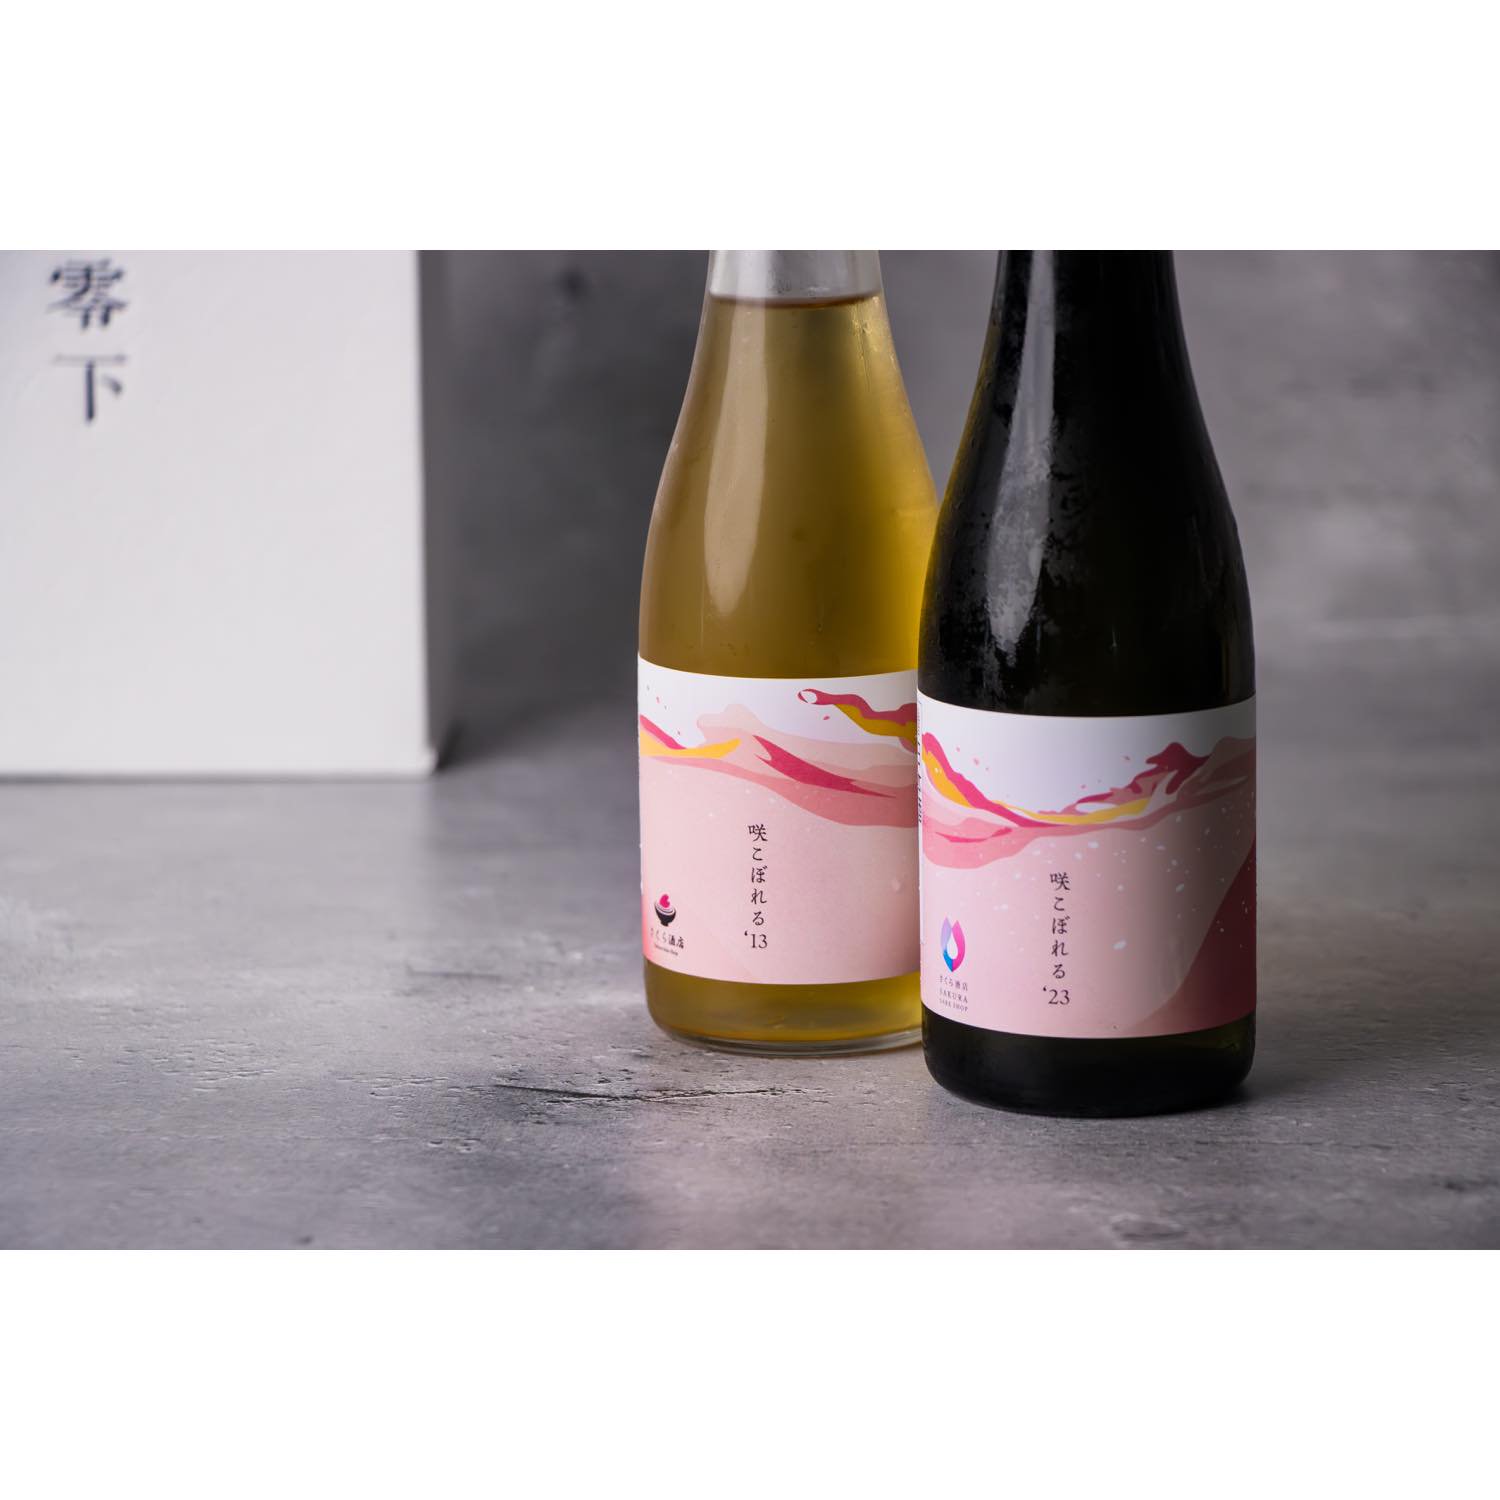 【限定リリース】オリジナル日本酒「咲こぼれる」 10年古酒 & 2023年醸造酒 の2本セット【ギフトボックス入り】